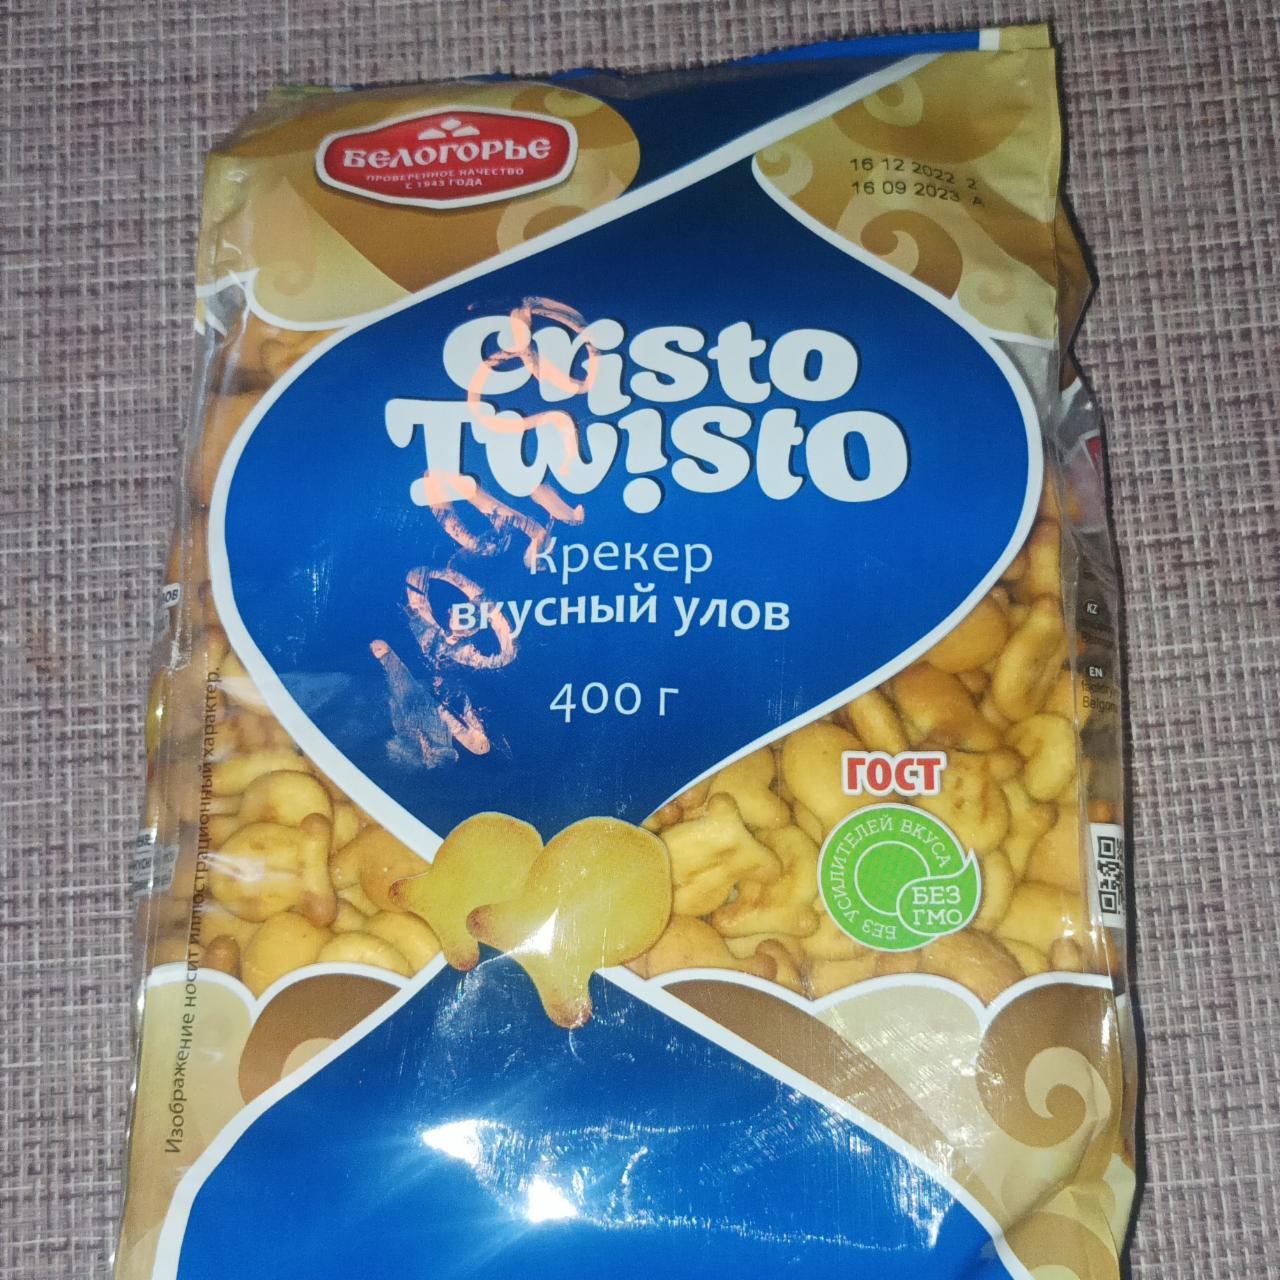 Фото - Крекер вкусный улов Cristo Twisto Белогорье